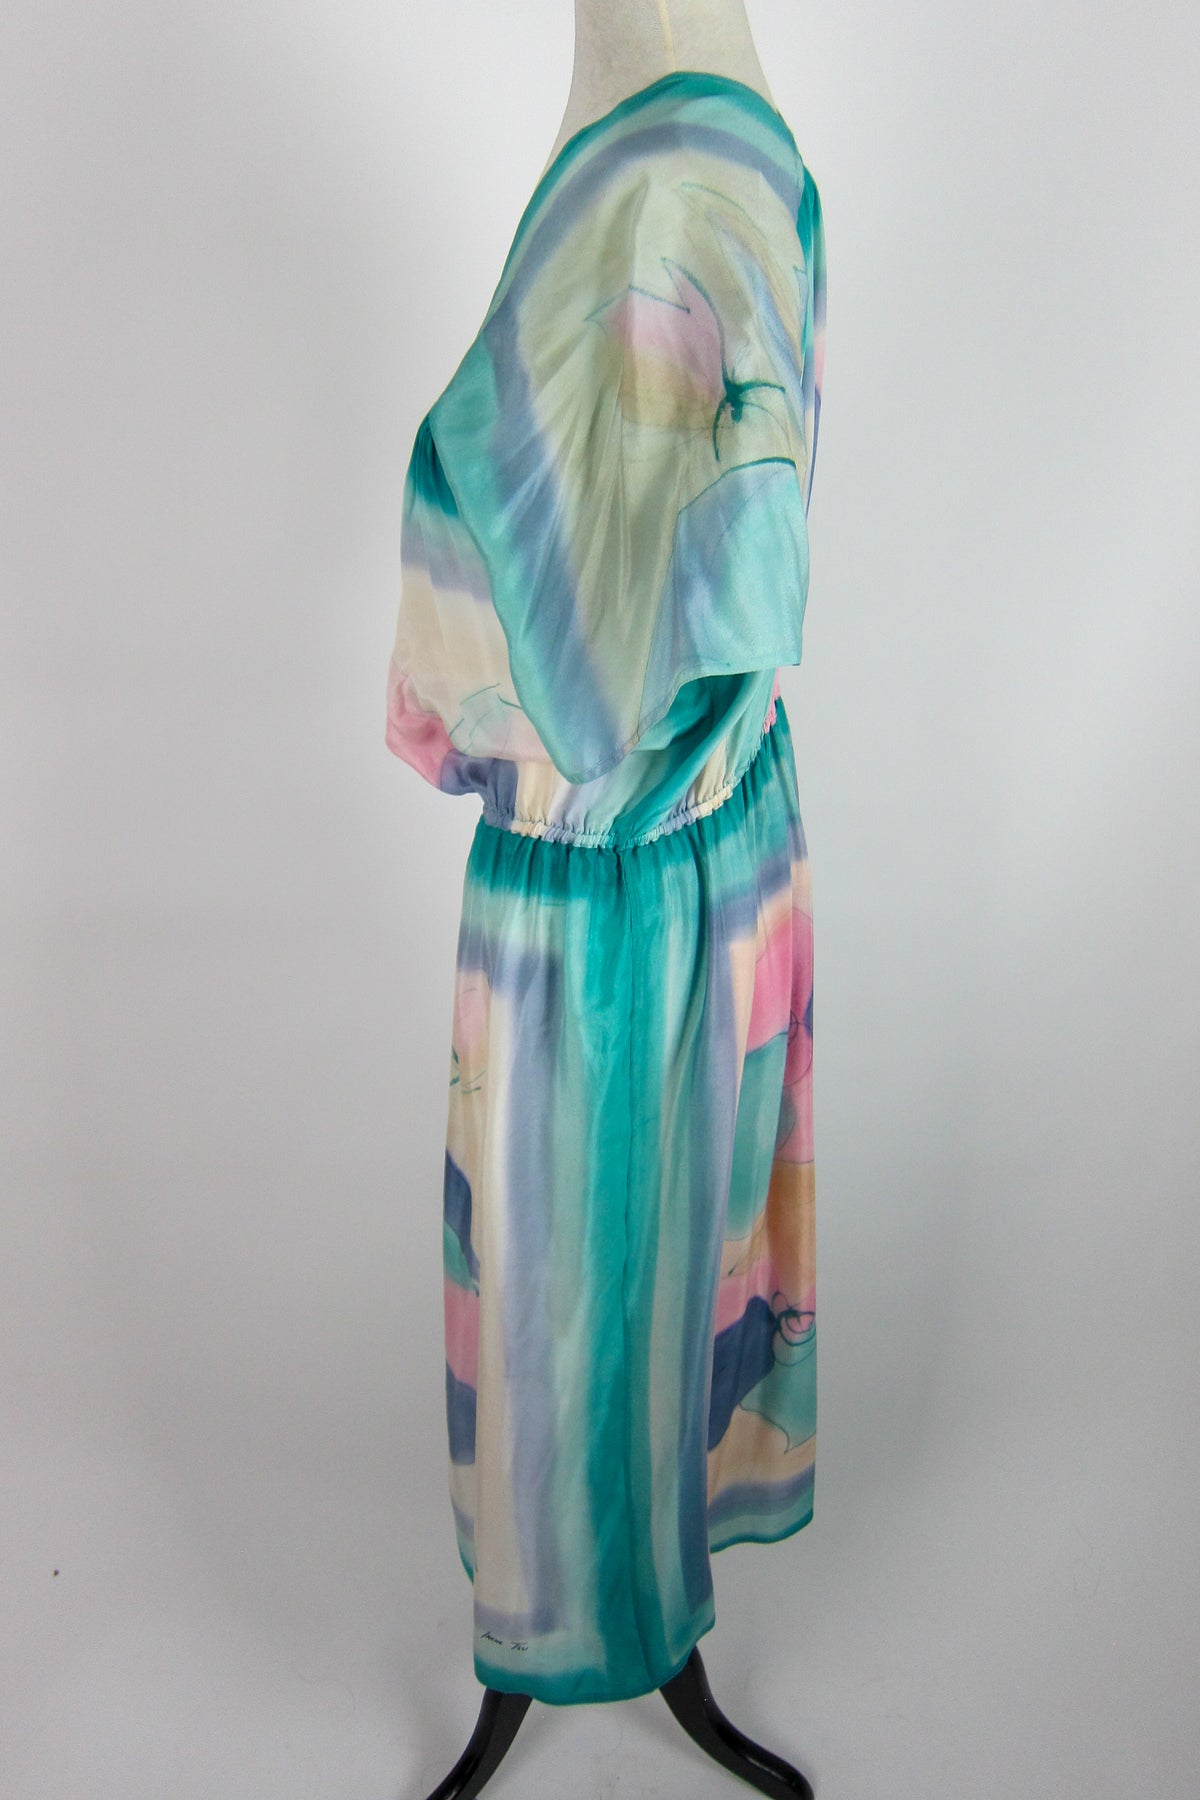 Irene Tsu Hand-Painted Silk Dress